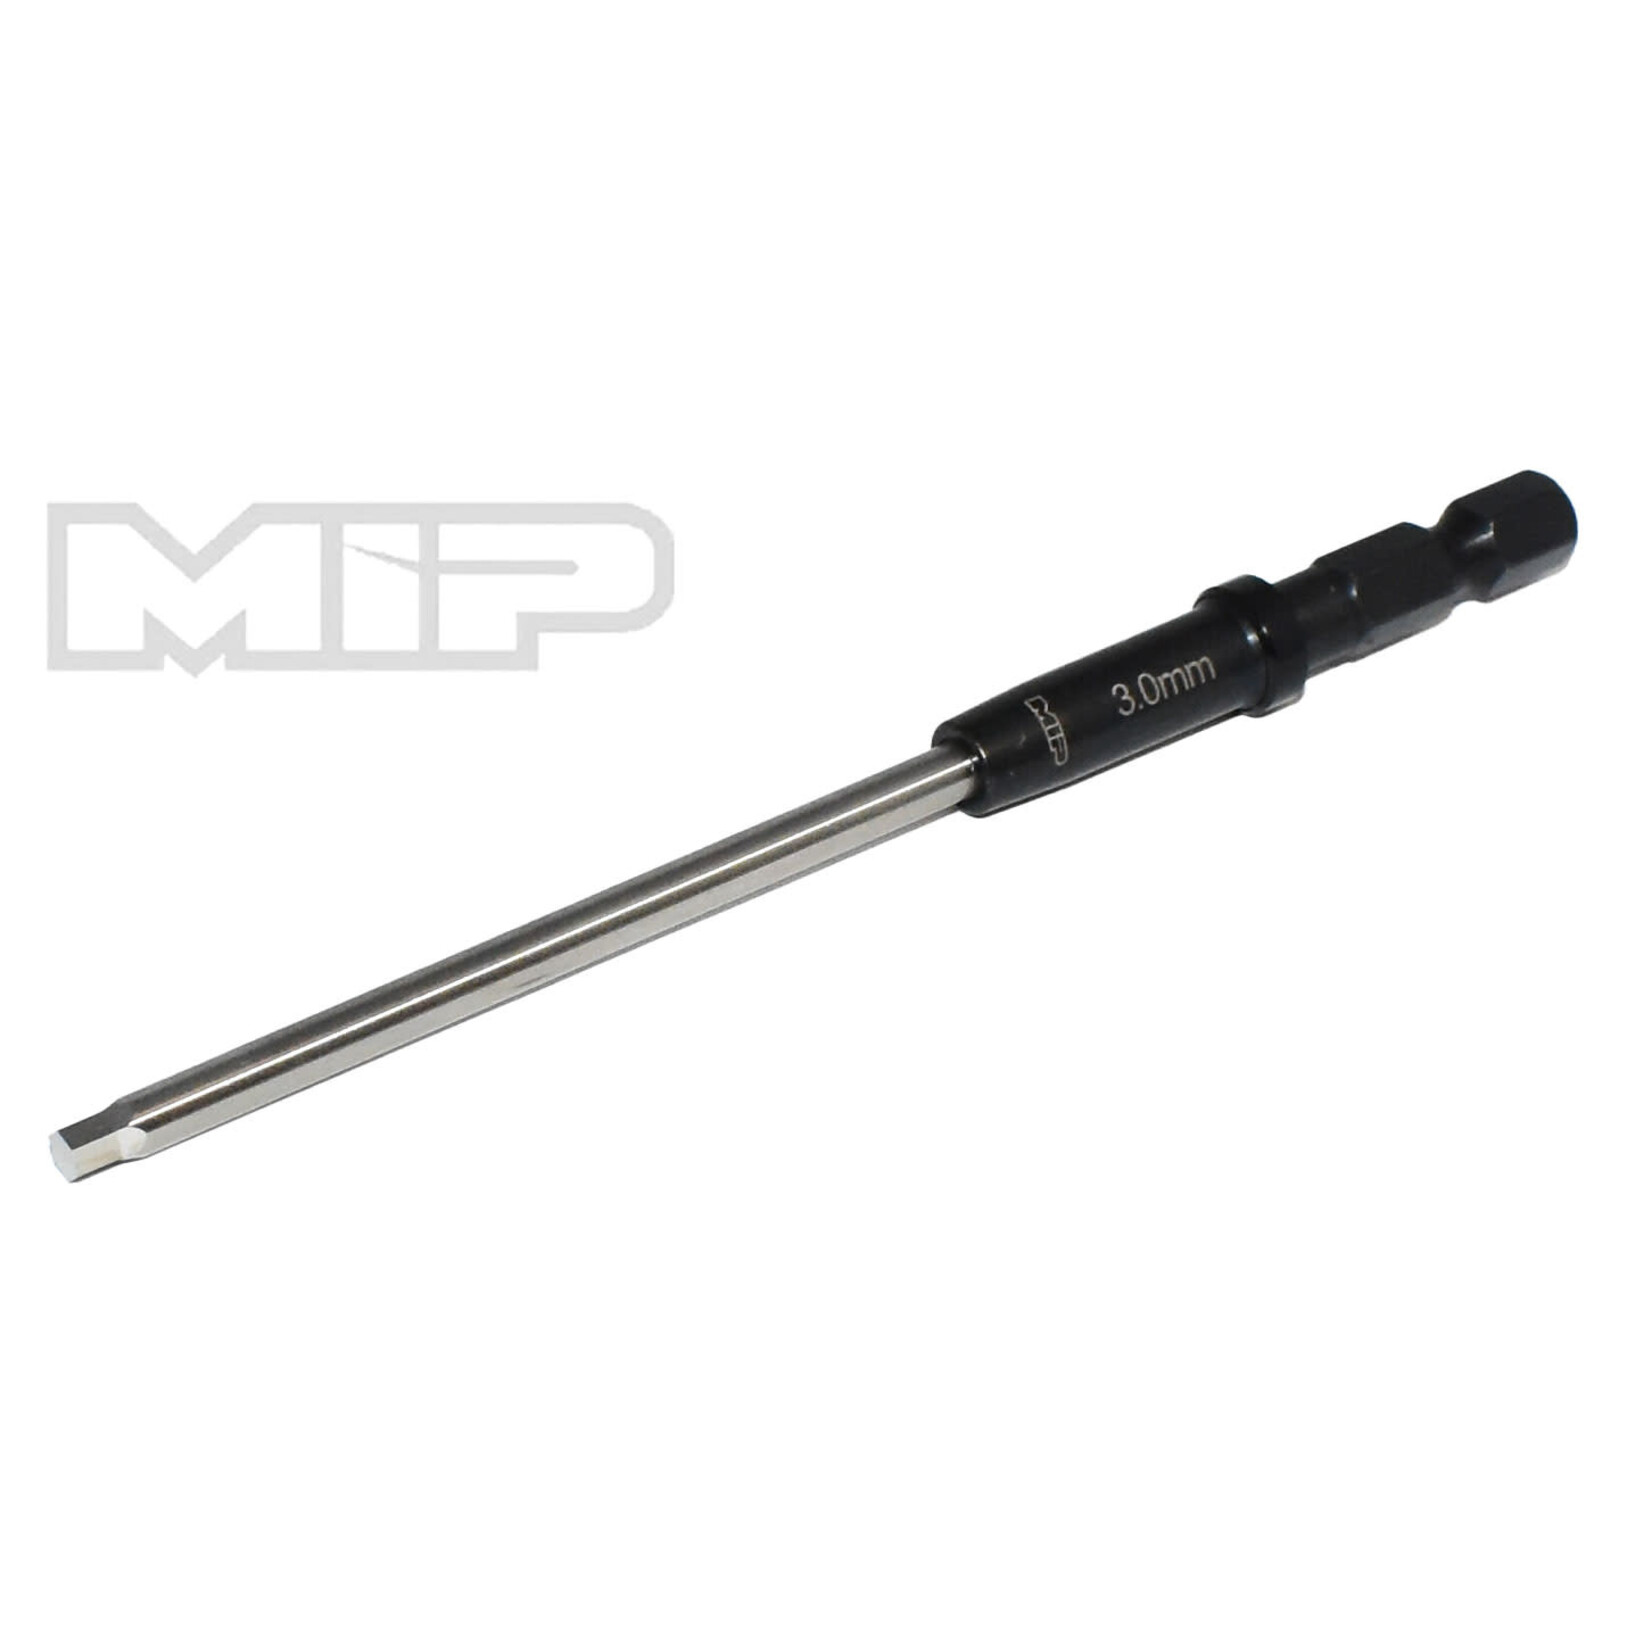 MIP MIP9211S  MIP 3.0mm Speed Tip Hex Driver Wrench Gen 2